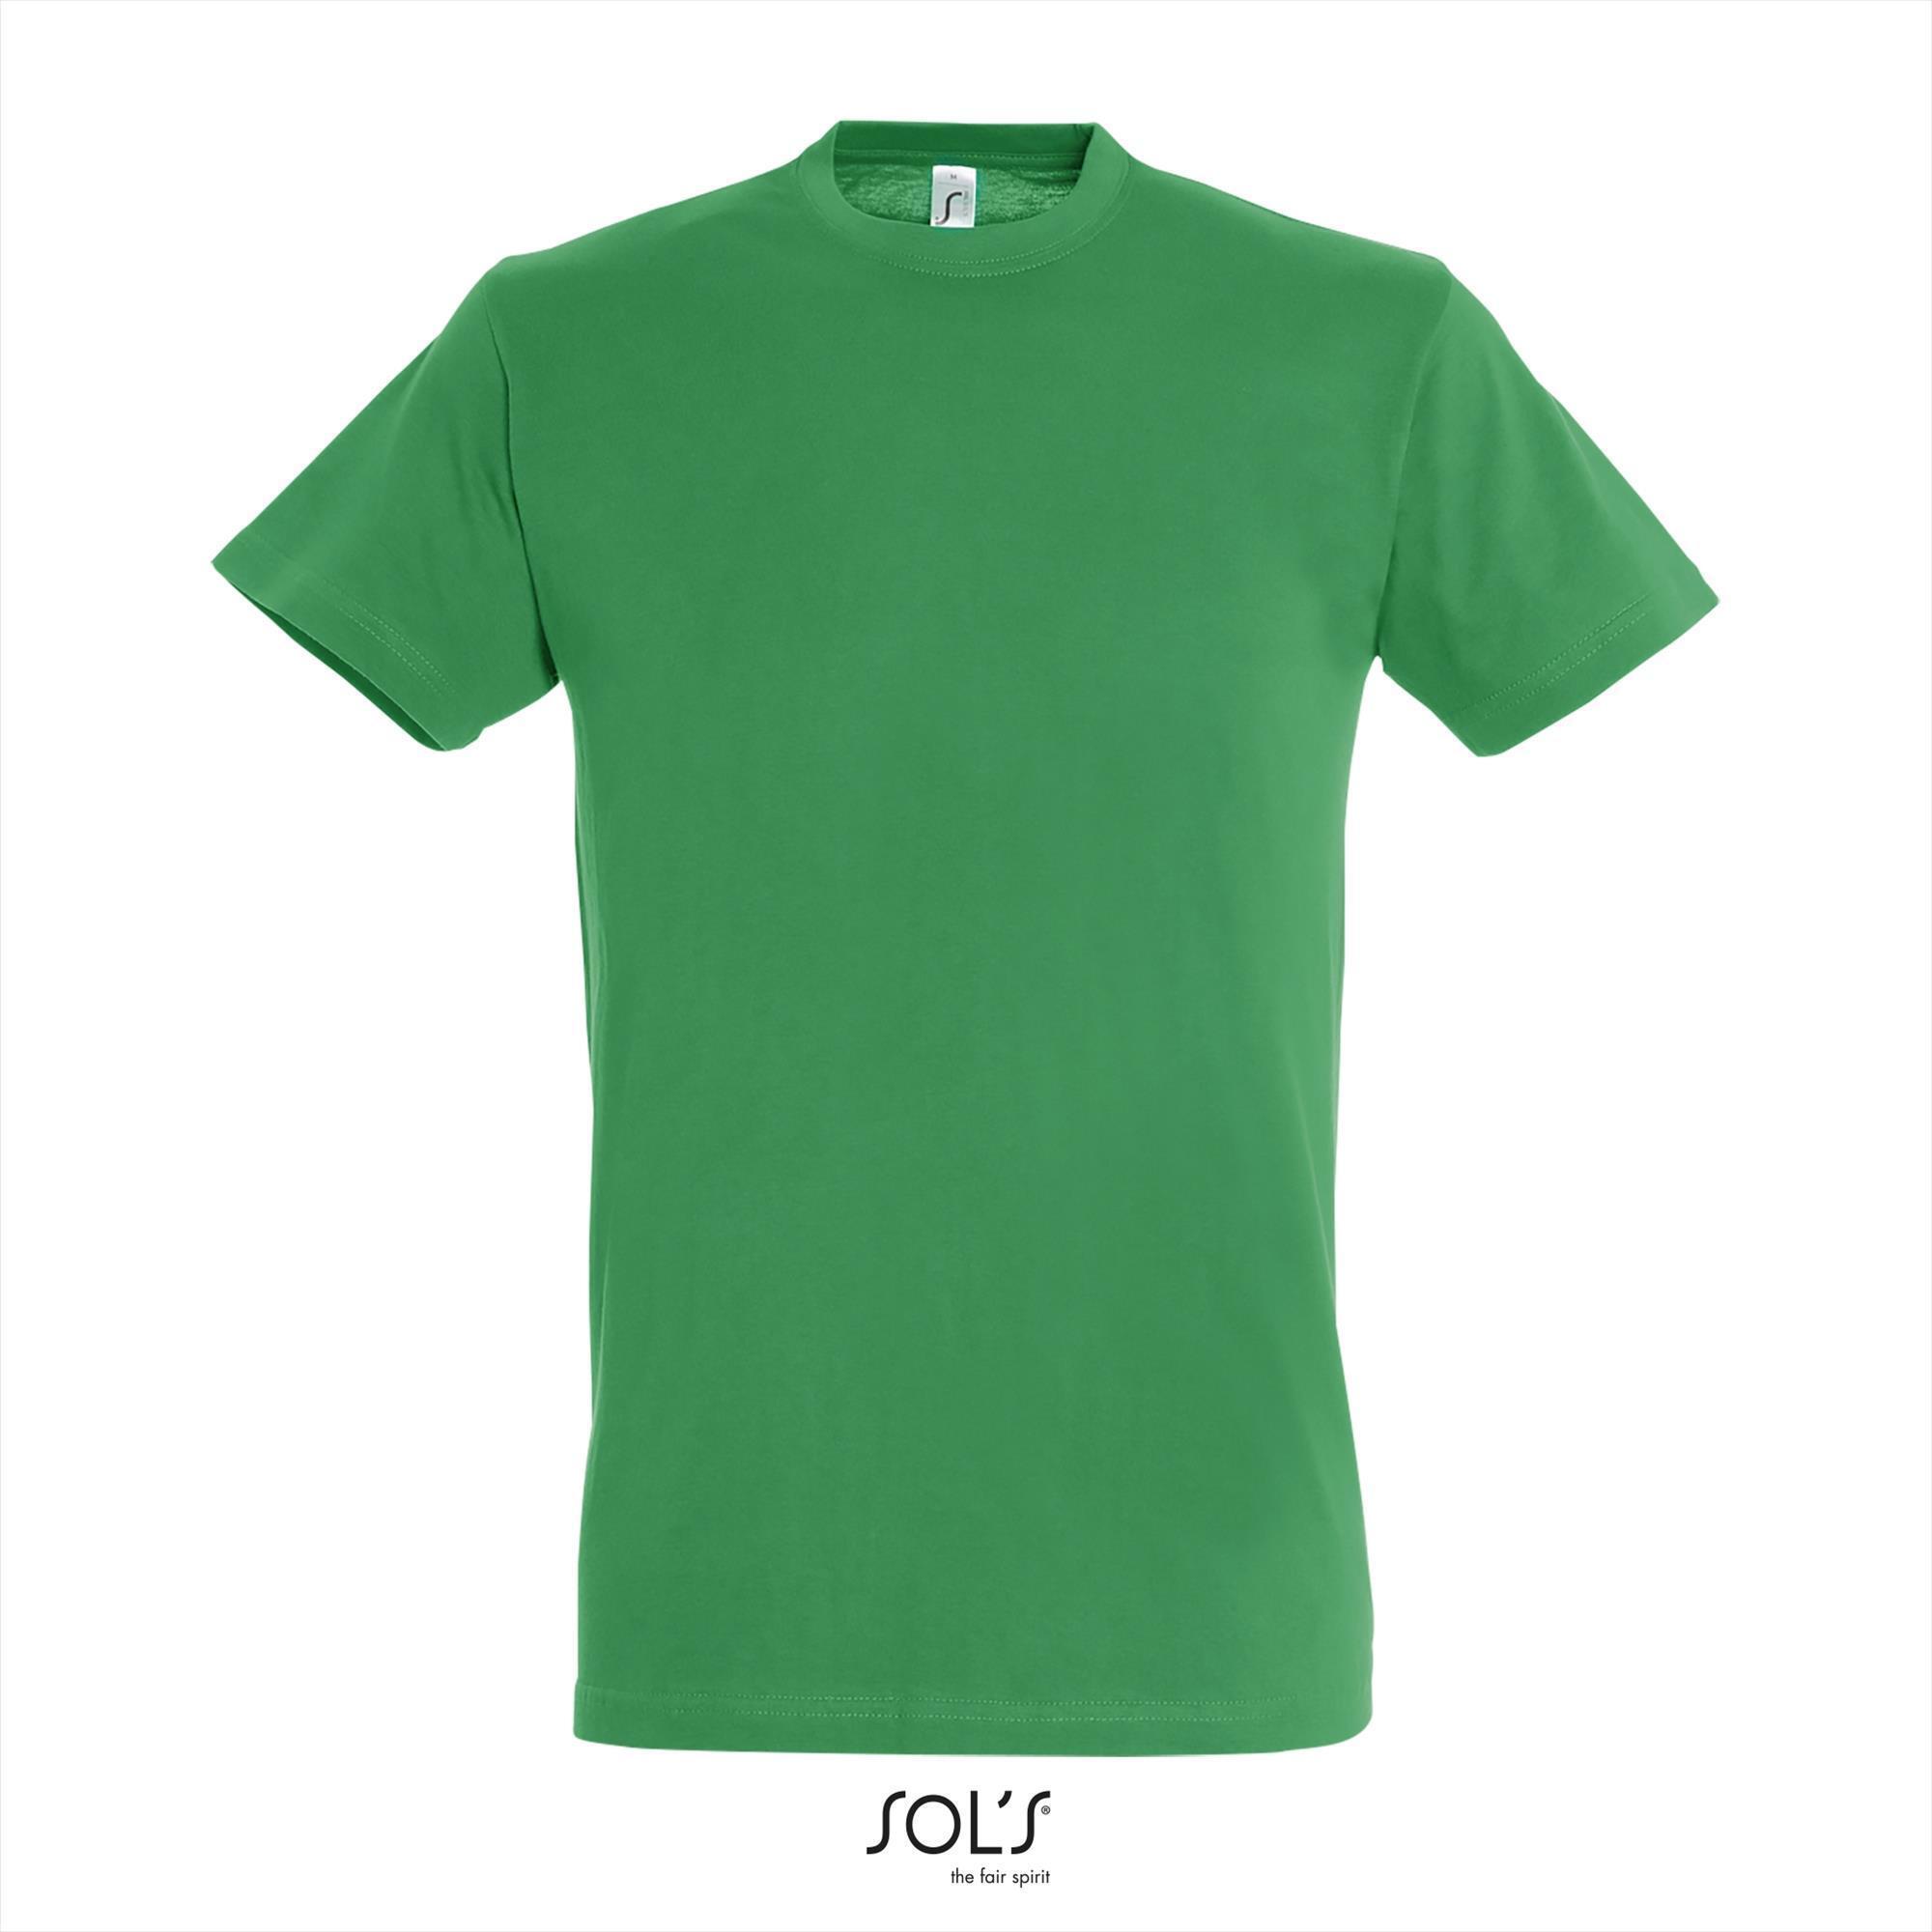 Heren T-shirt met een ronde hals mannen shirt kelly green groen